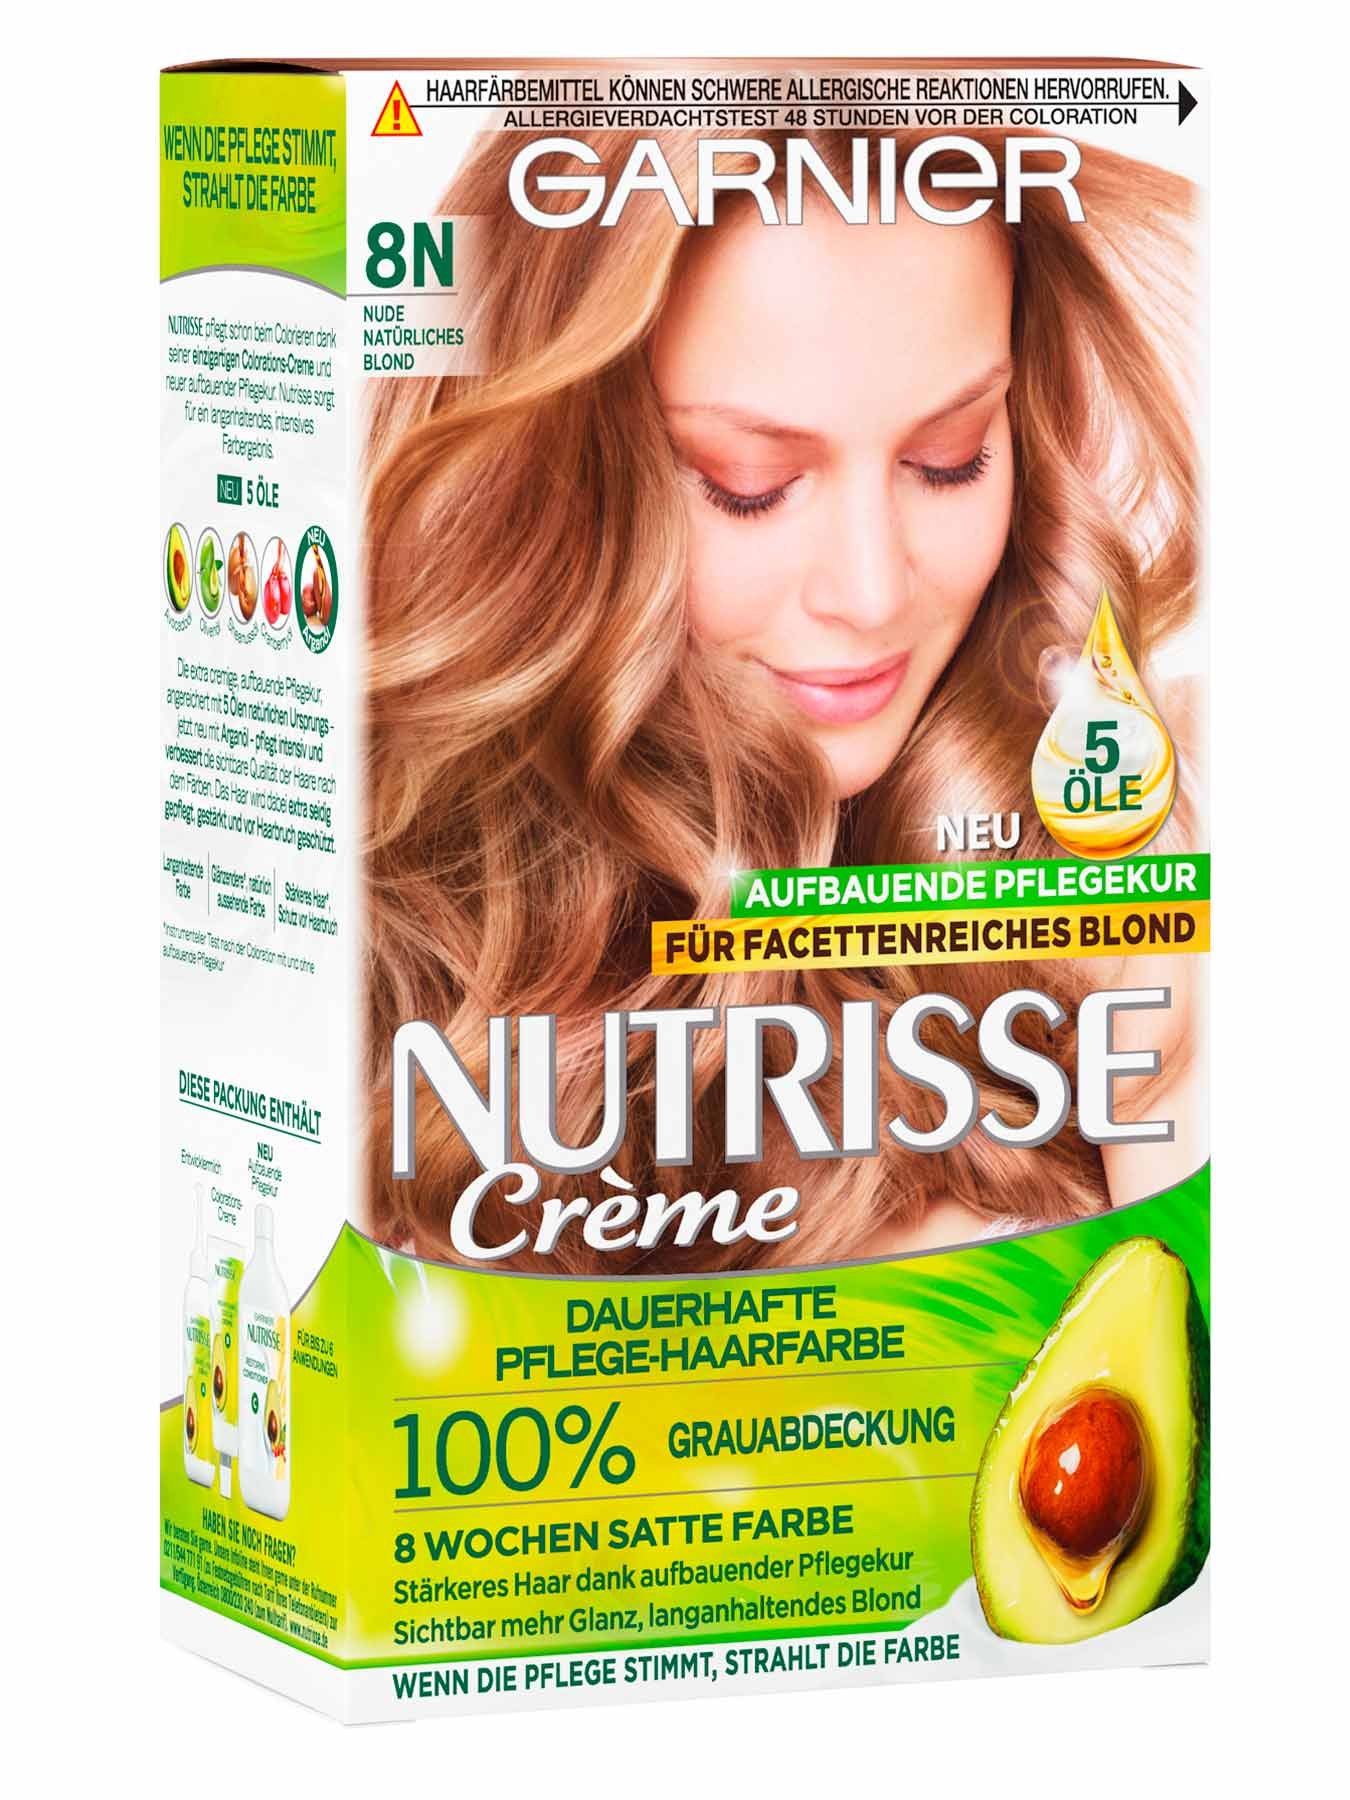 Vorderansicht auf die Verpackung der Garnier Nutrisse Creme 8N Nude Natürliches Blond